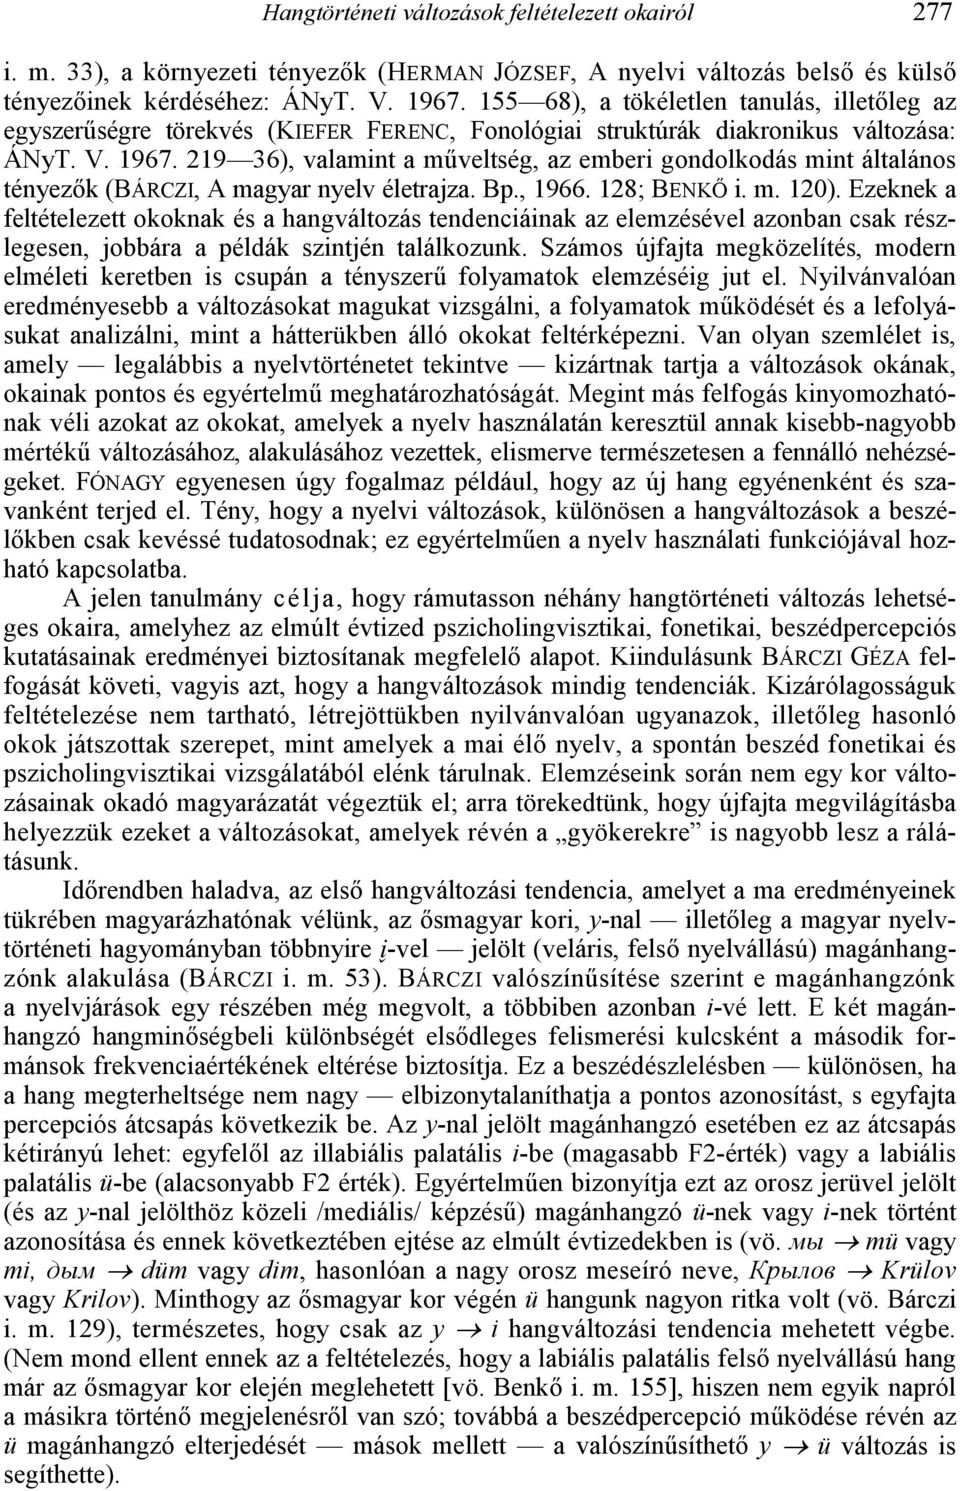 219 36), valamint a moveltség, az emberi gondolkodás mint általános tényezk (BÁRCZI, A magyar nyelv életrajza. Bp., 1966. 128; BENKI i. m. 120).